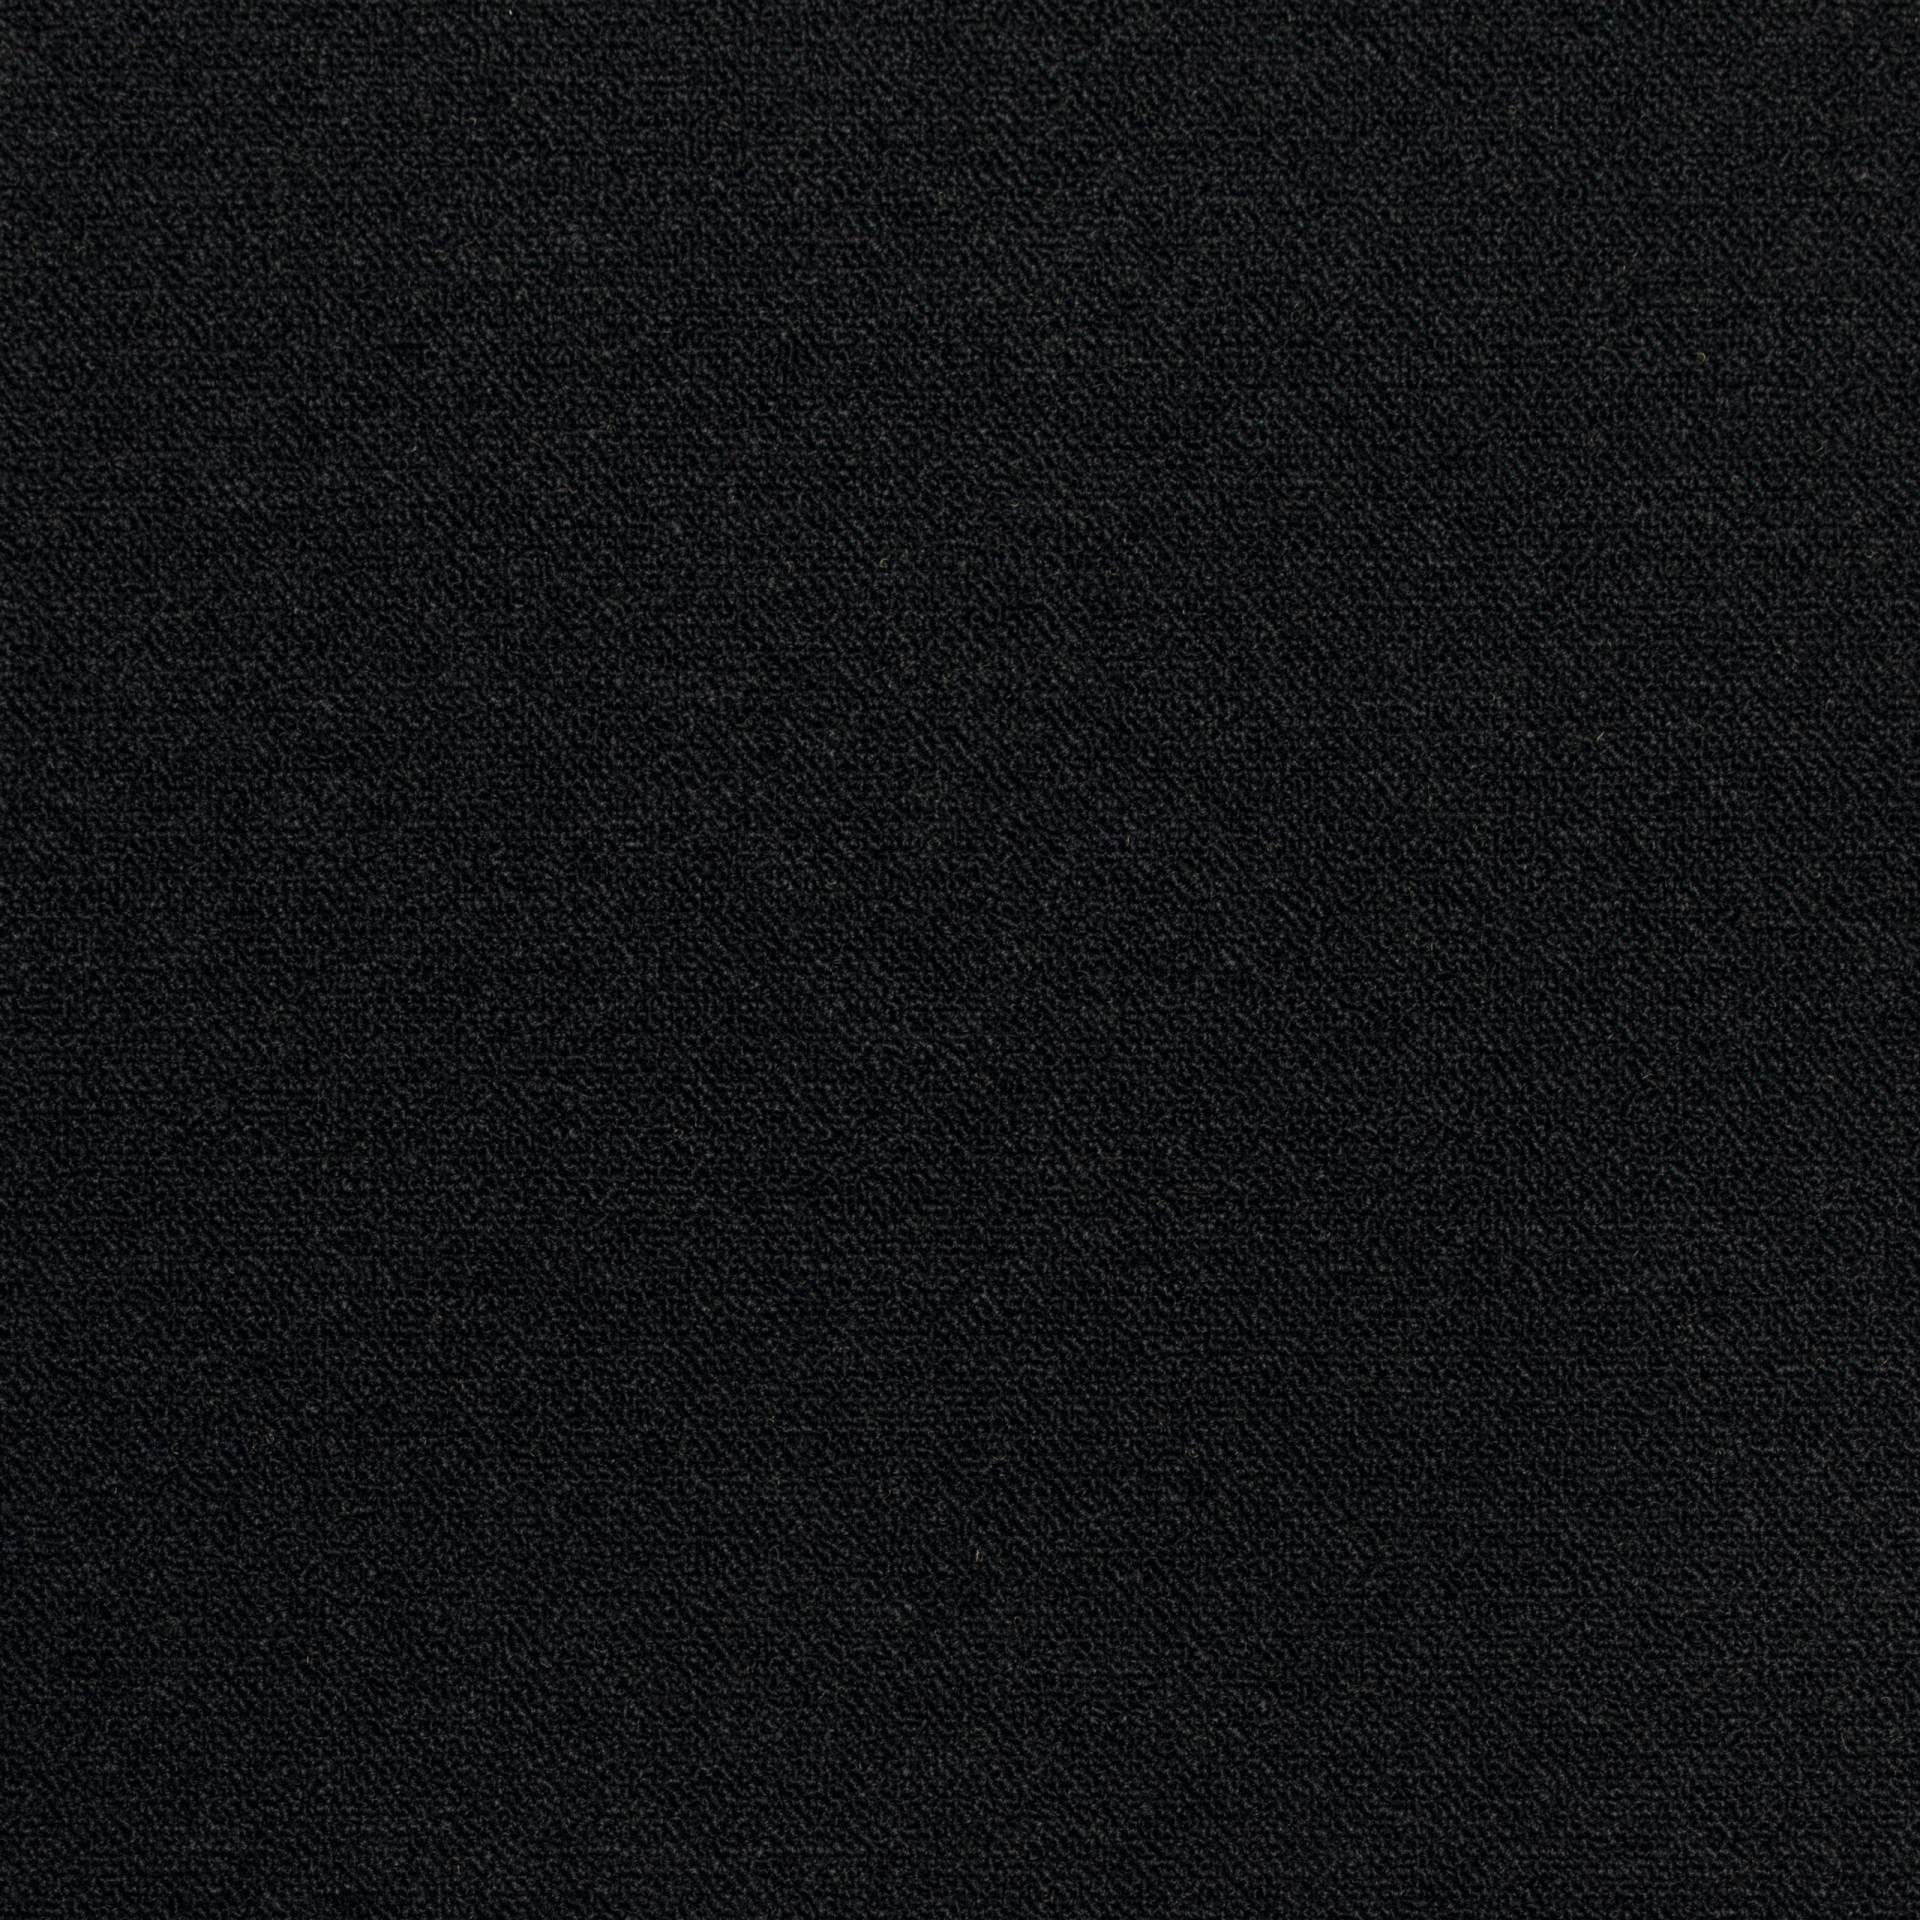 Kobercové čtverce CREATIVE SPARK černé 50x50 cm